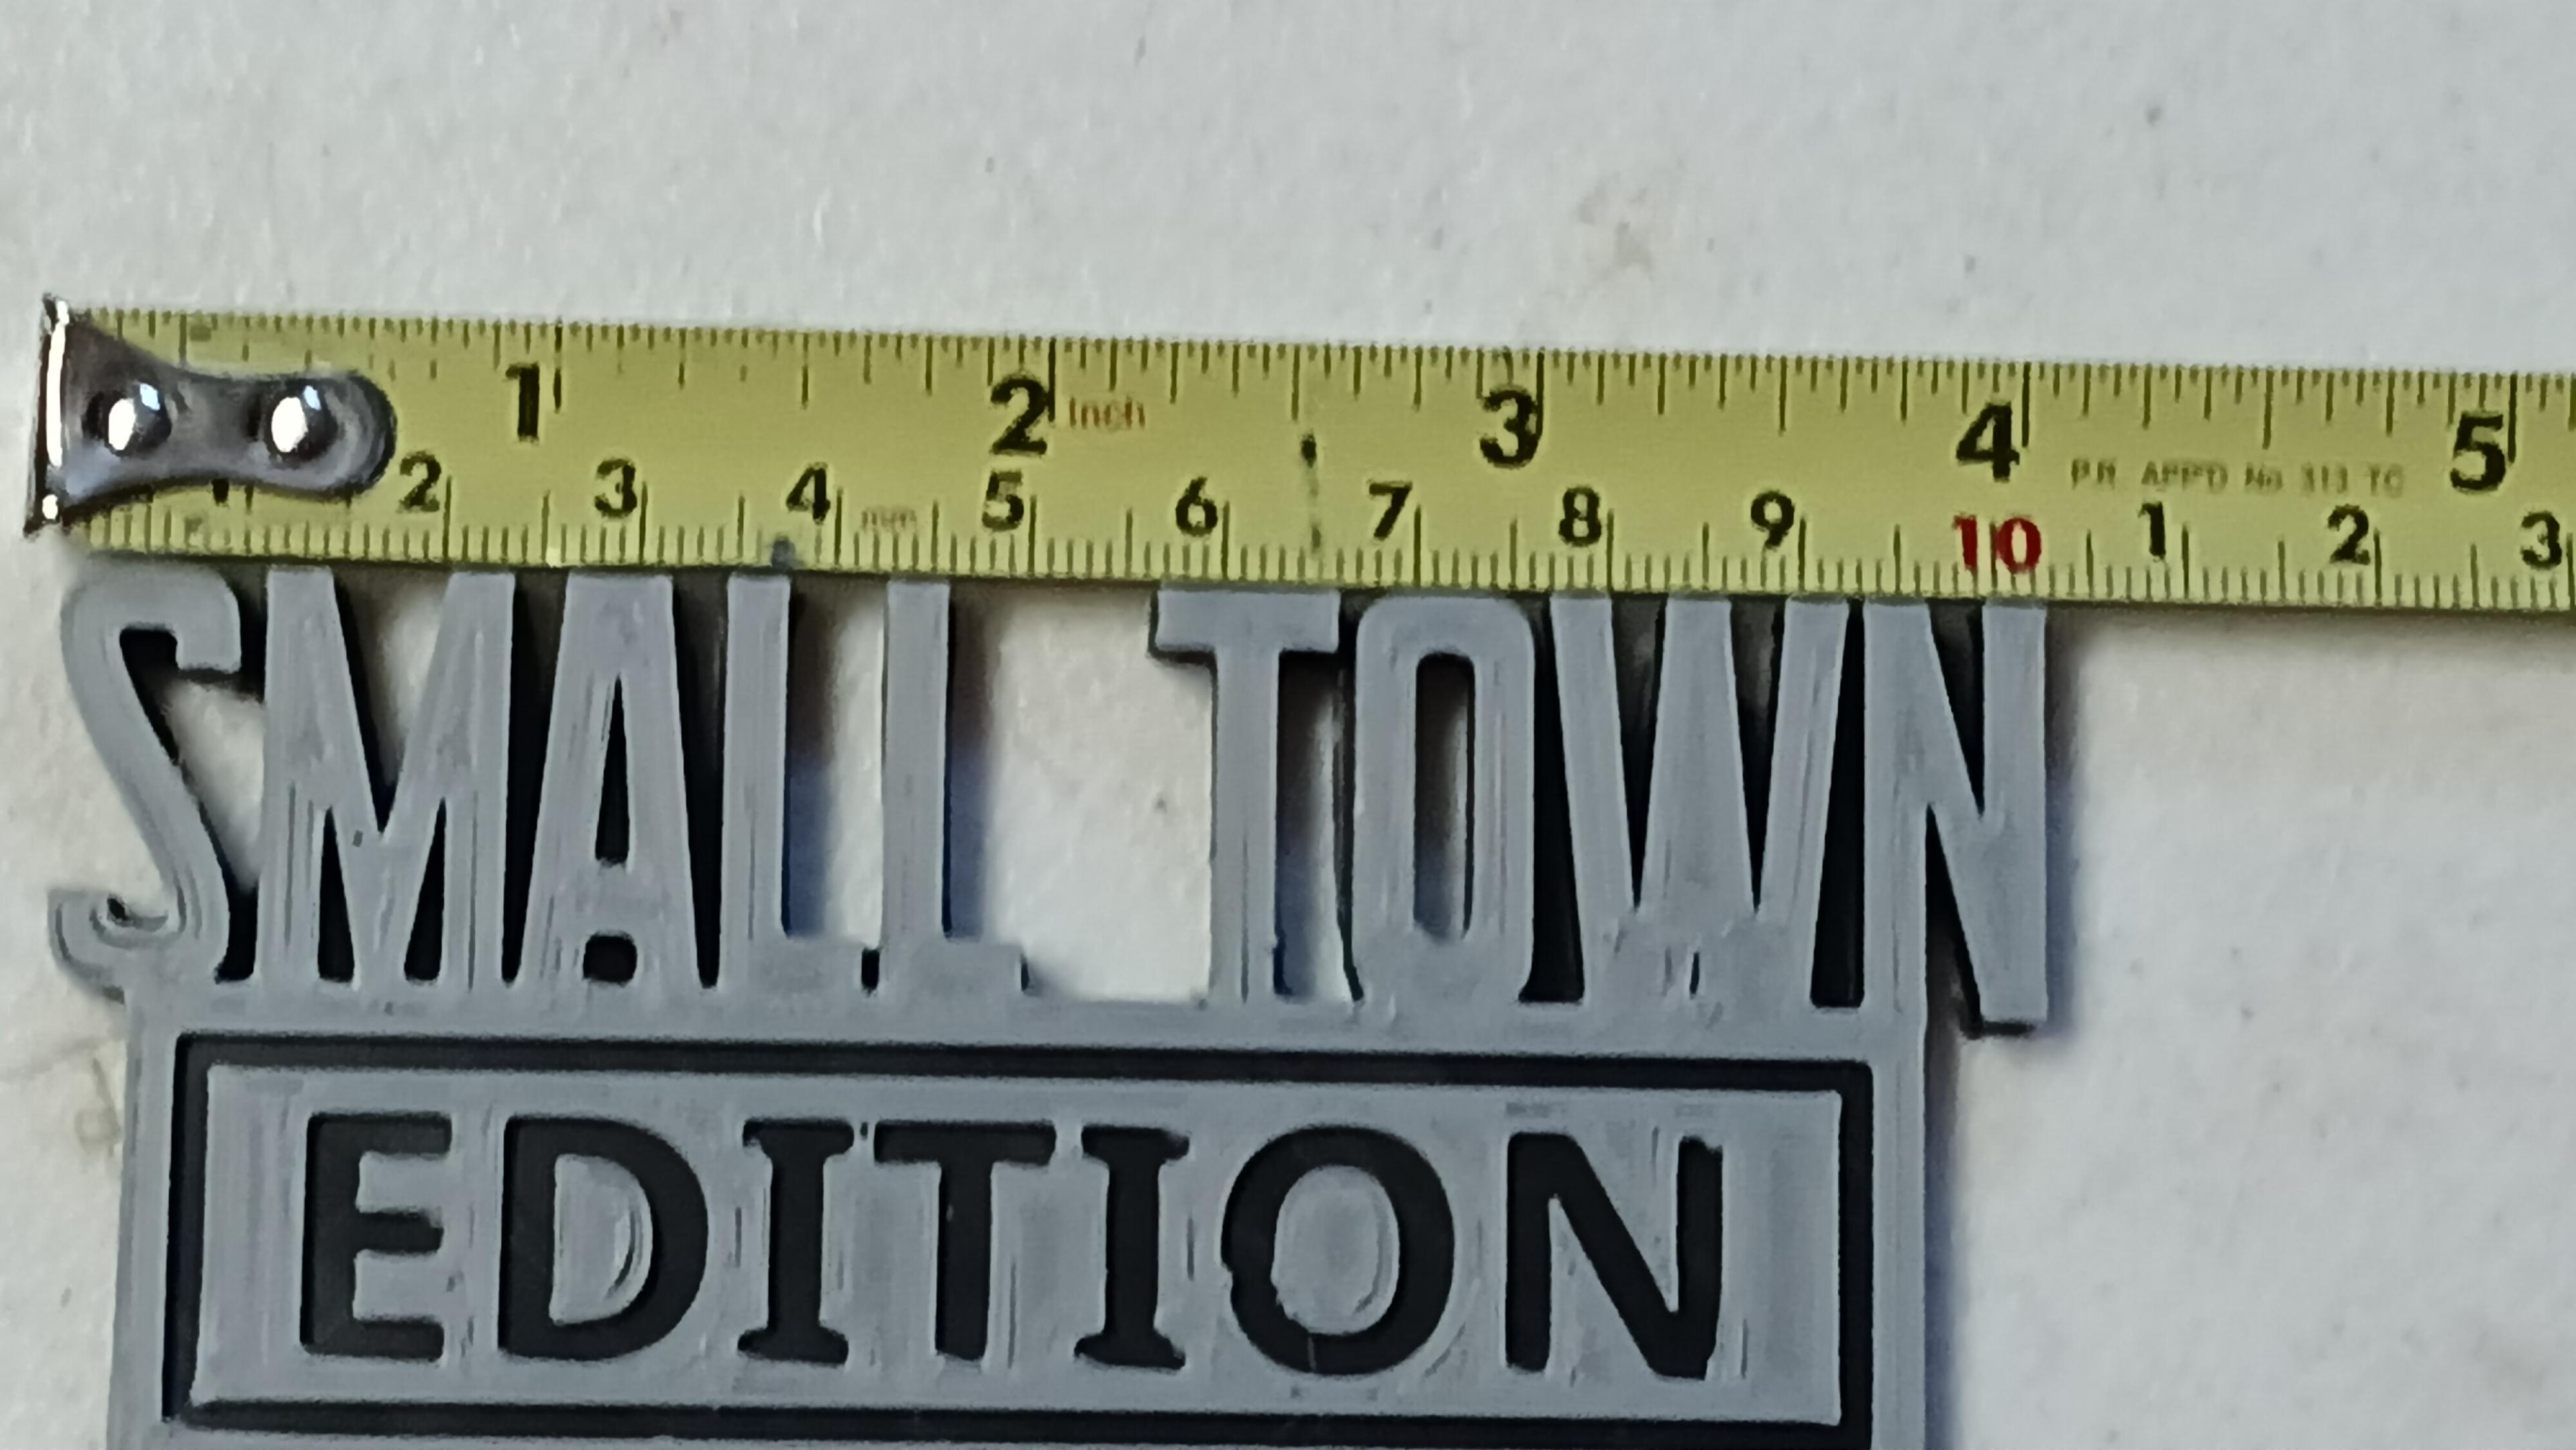 Small Town Edition badge emblem 3d model